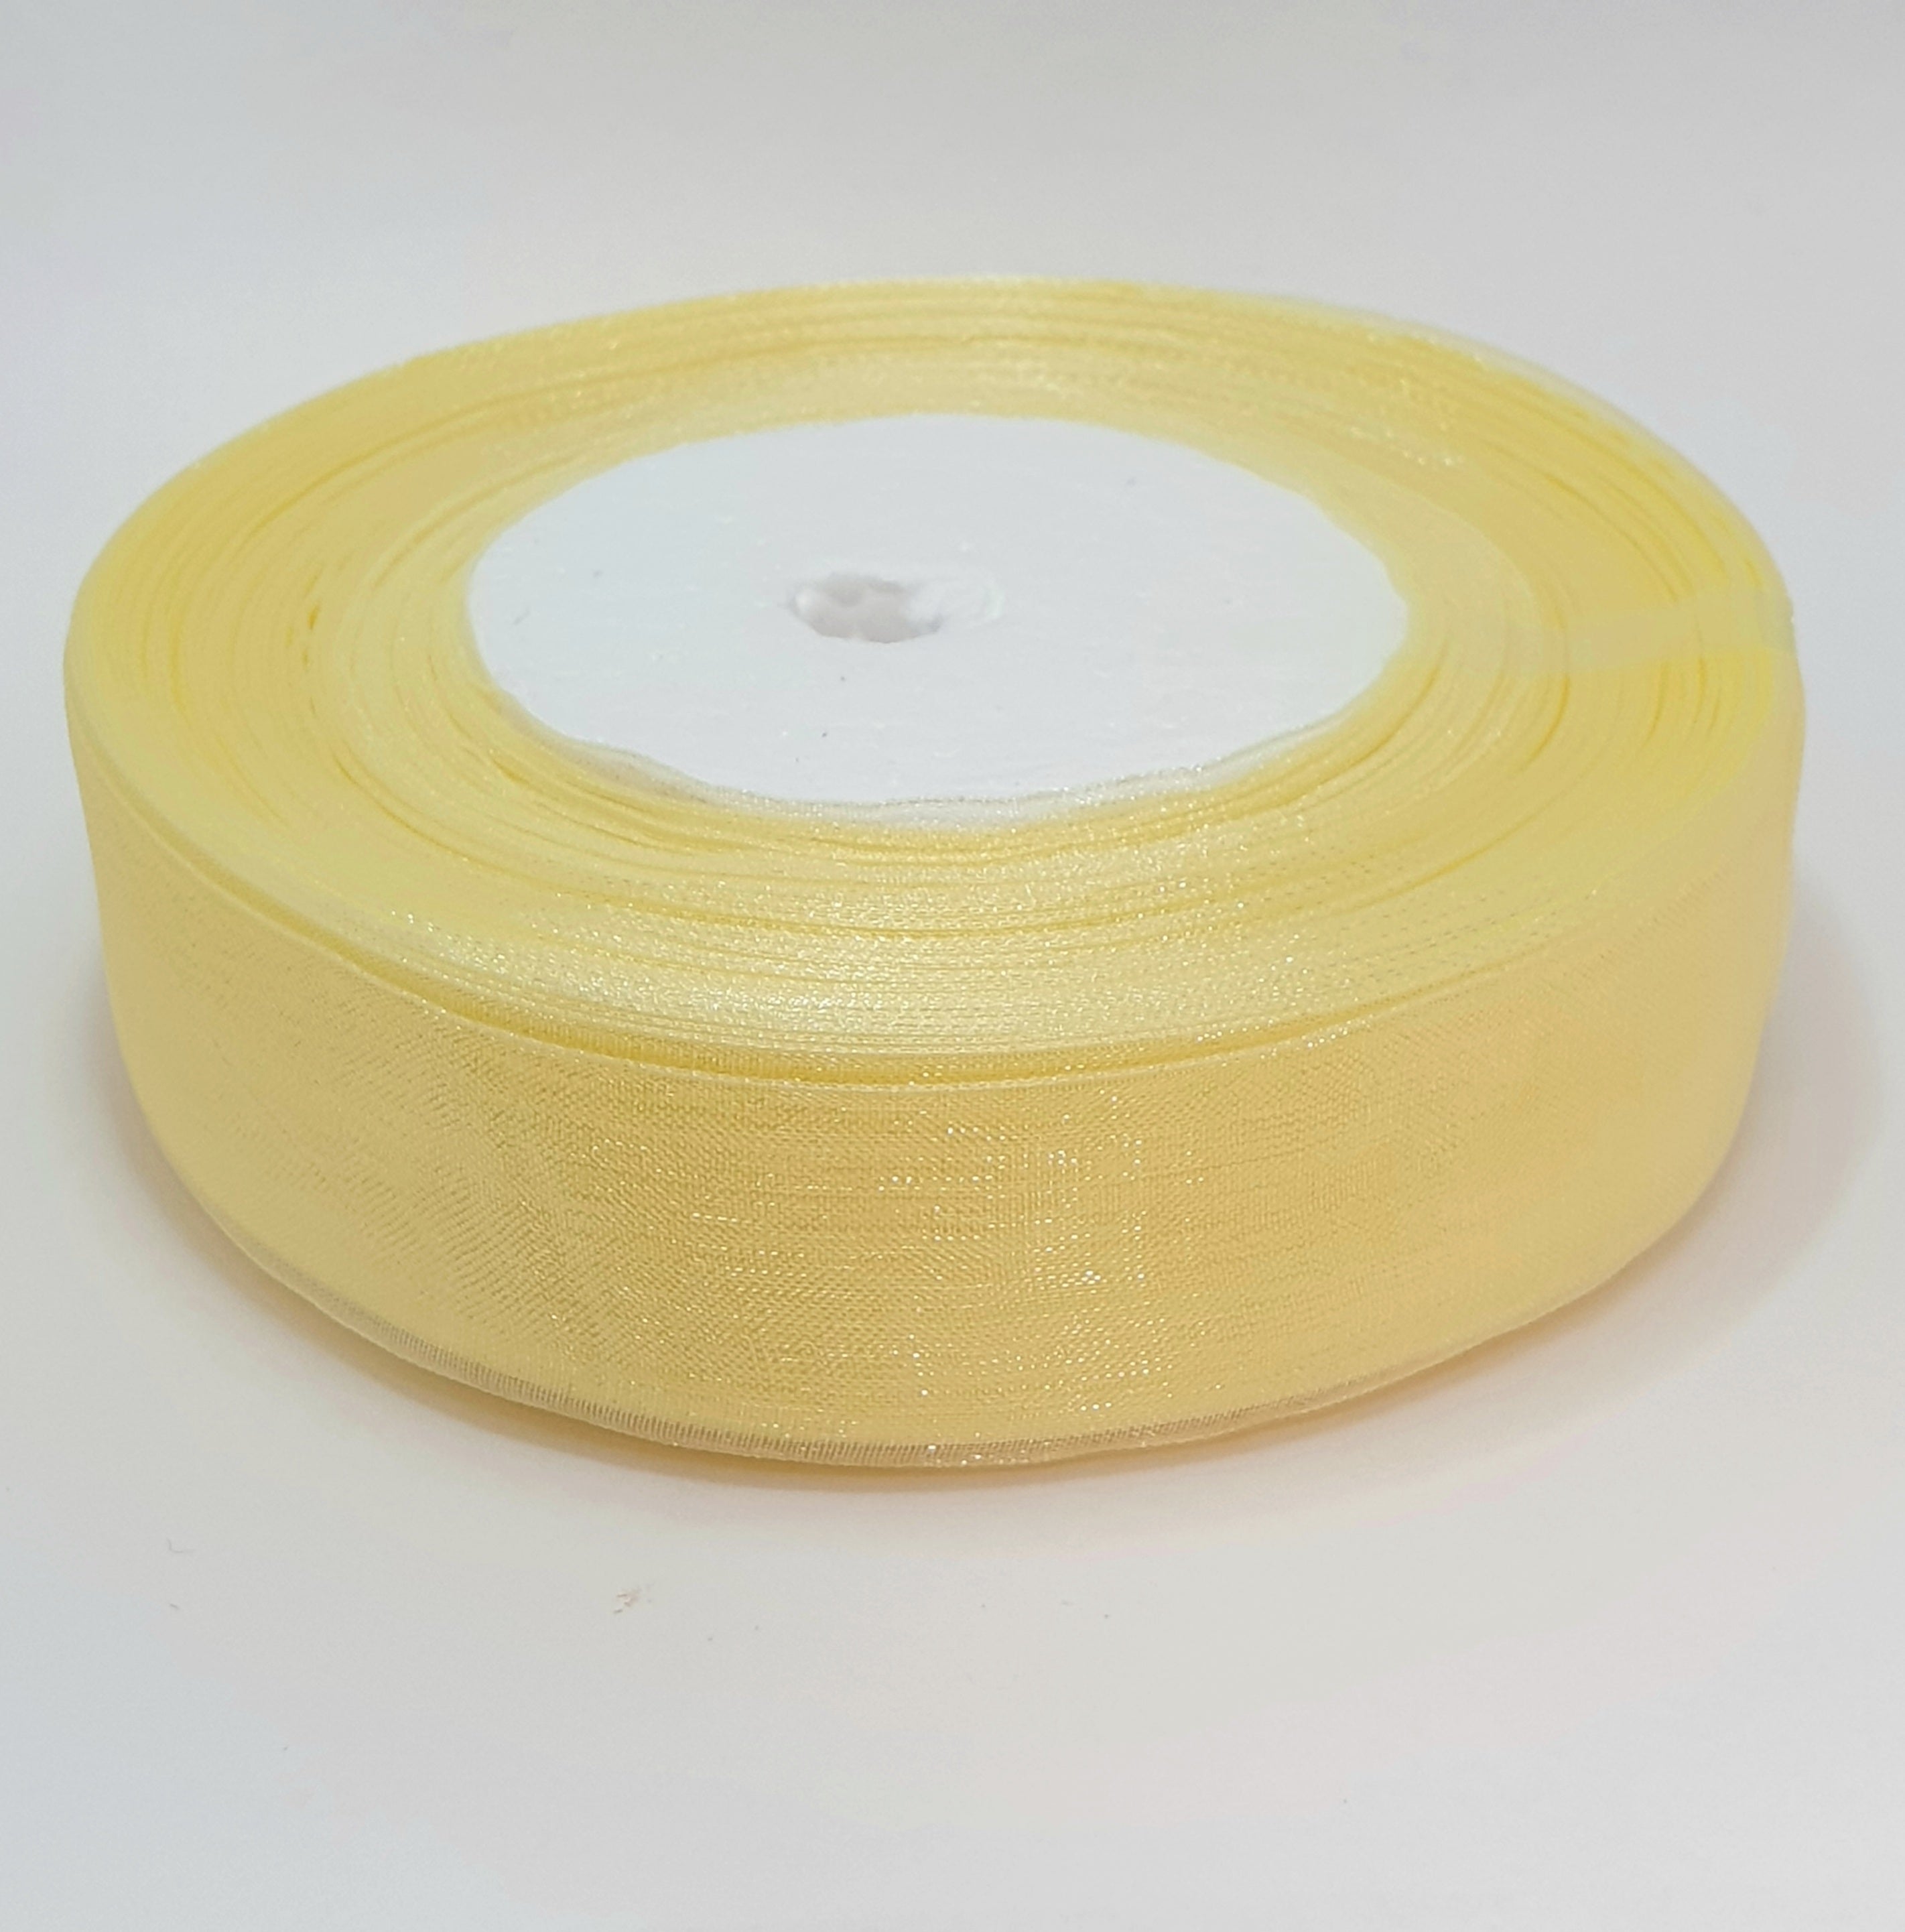 MajorCrafts 25mm 45metres Sheer Organza Fabric Ribbon Roll Cream Ivory Shade R1002